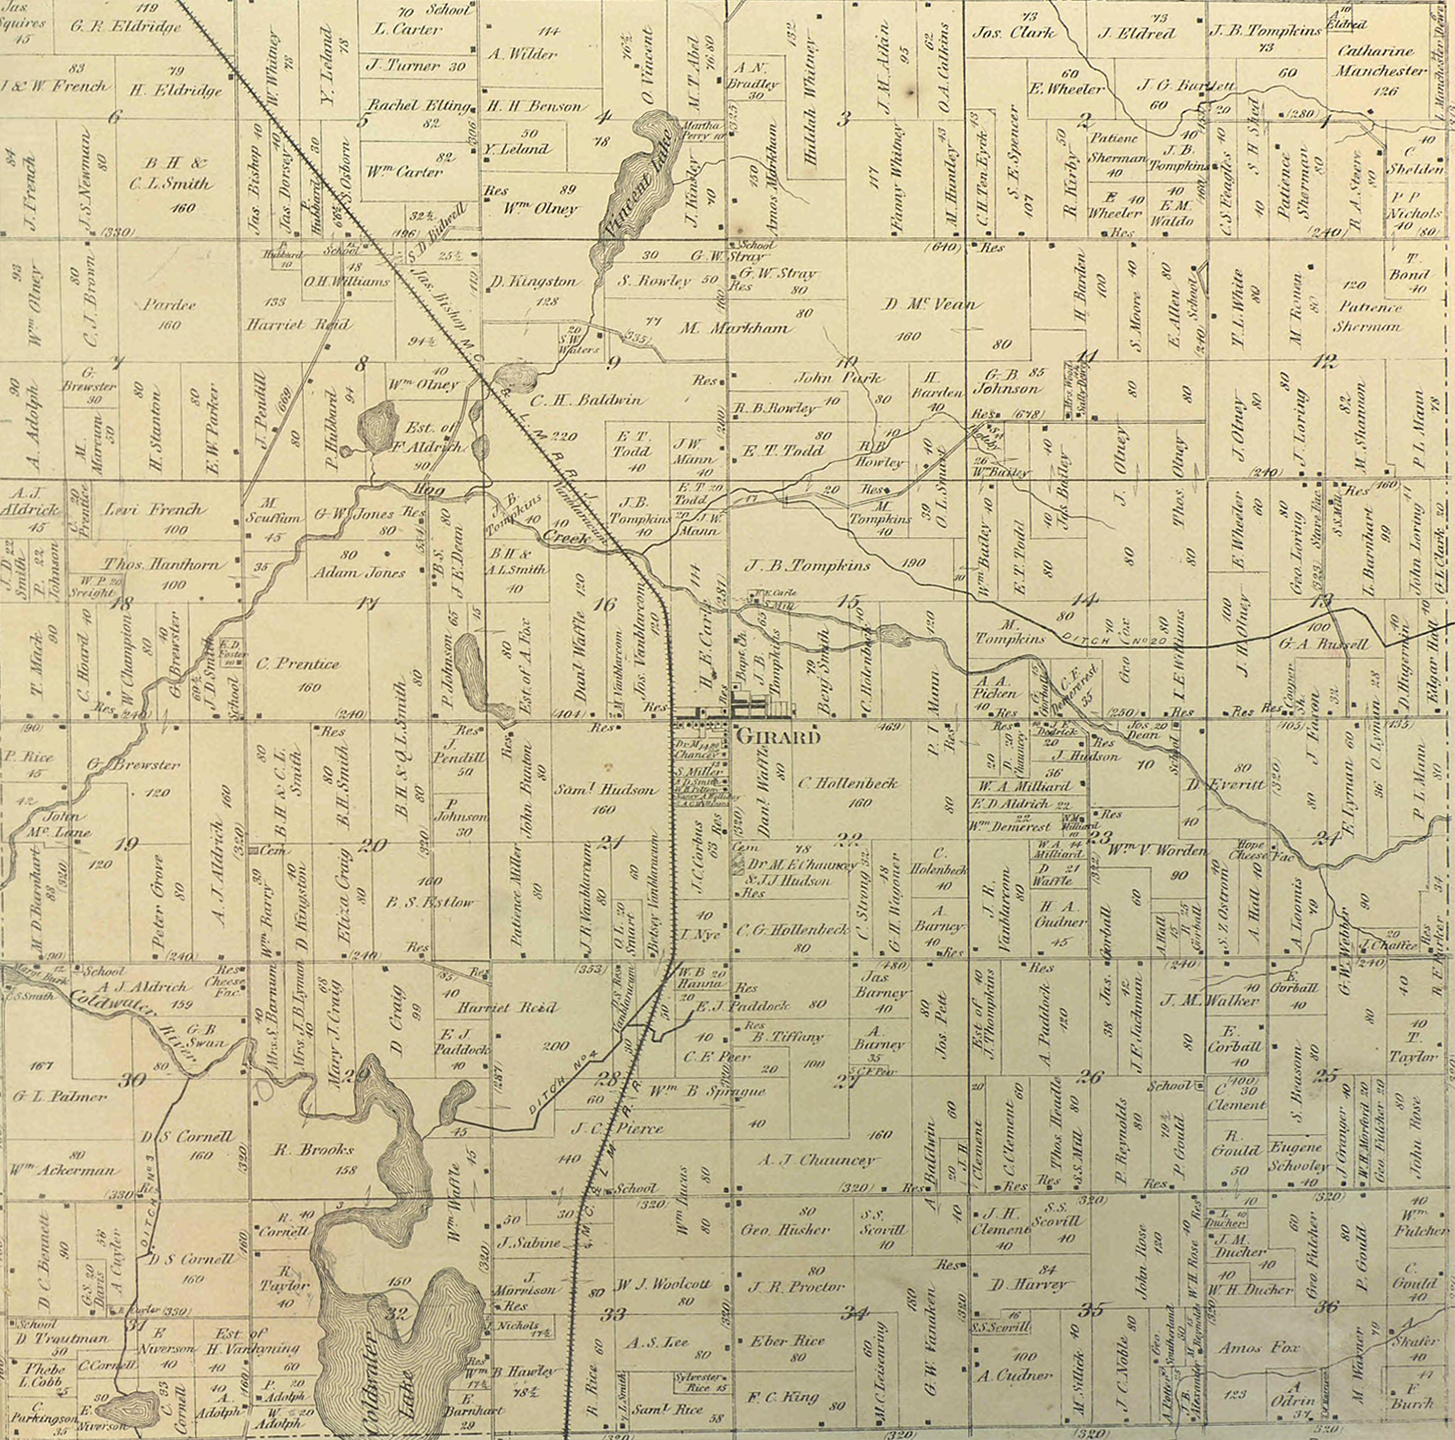 1872 Girard Township, Michigan landownership map